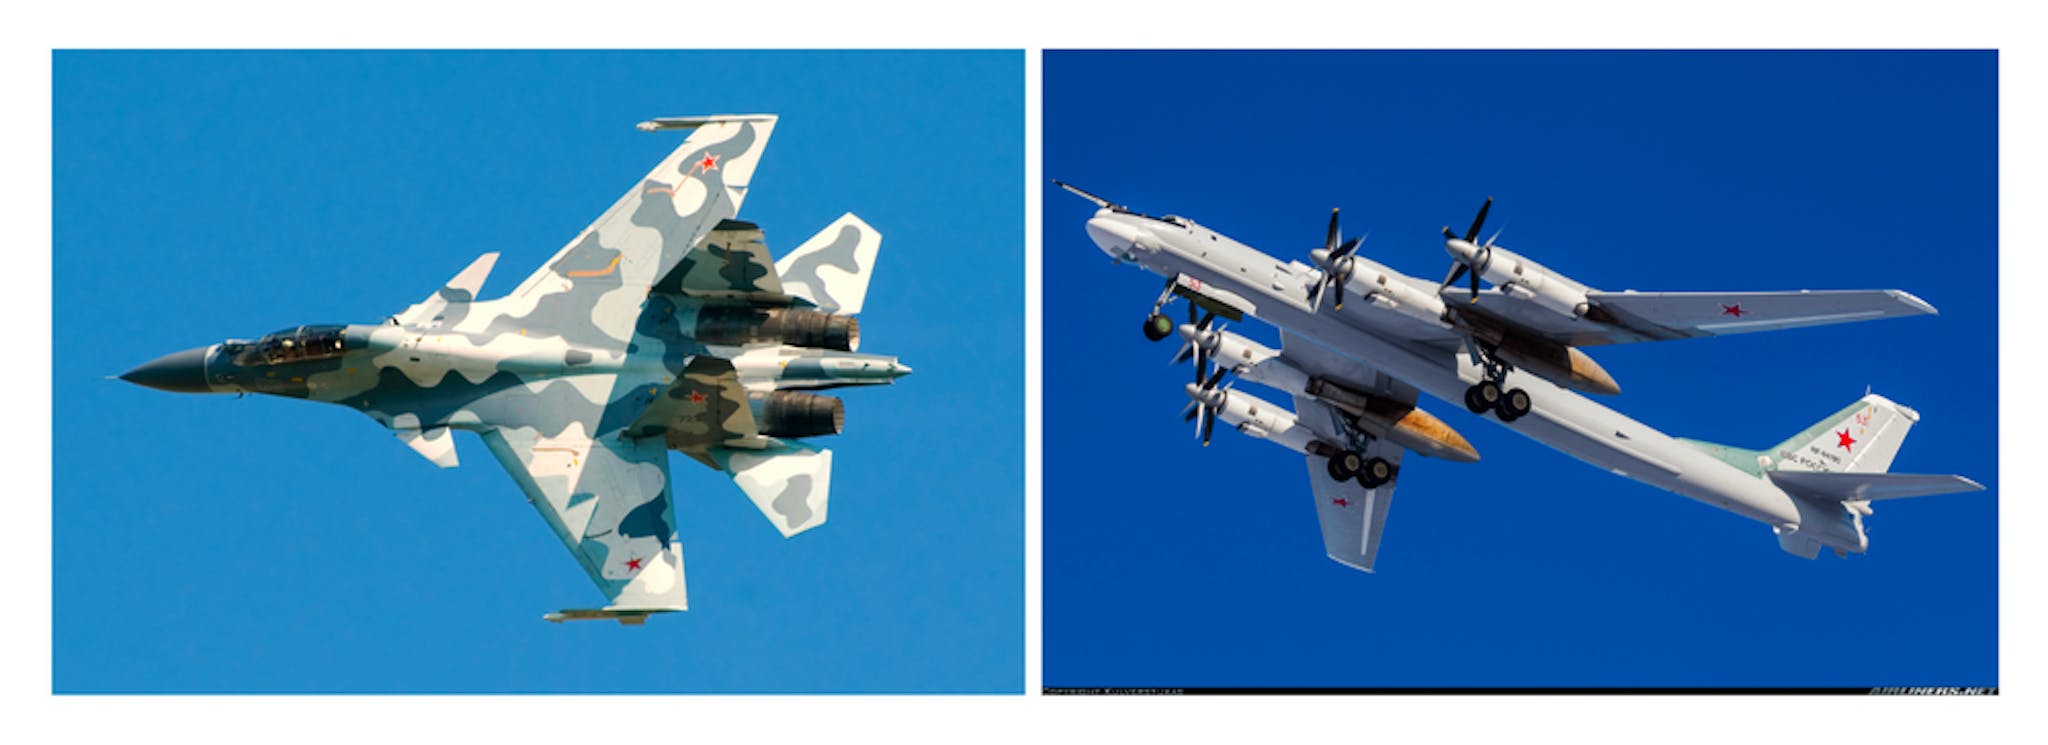 Da esquerda para a direita: (1) Su-30, (2) Tu-95